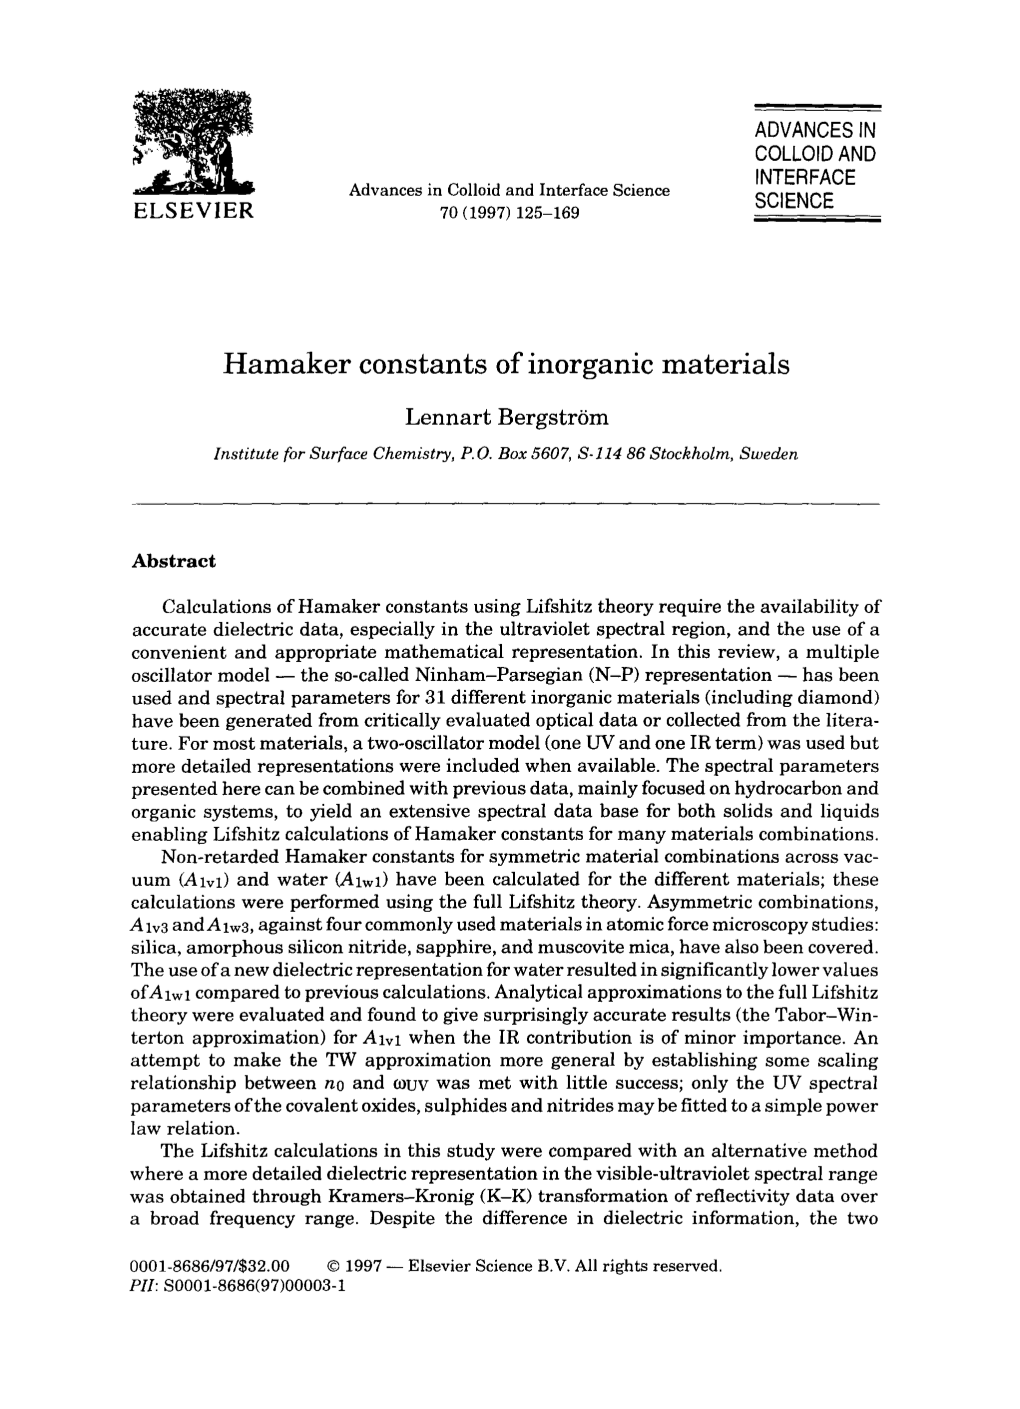 Hamaker Constants of Inorganic Materials